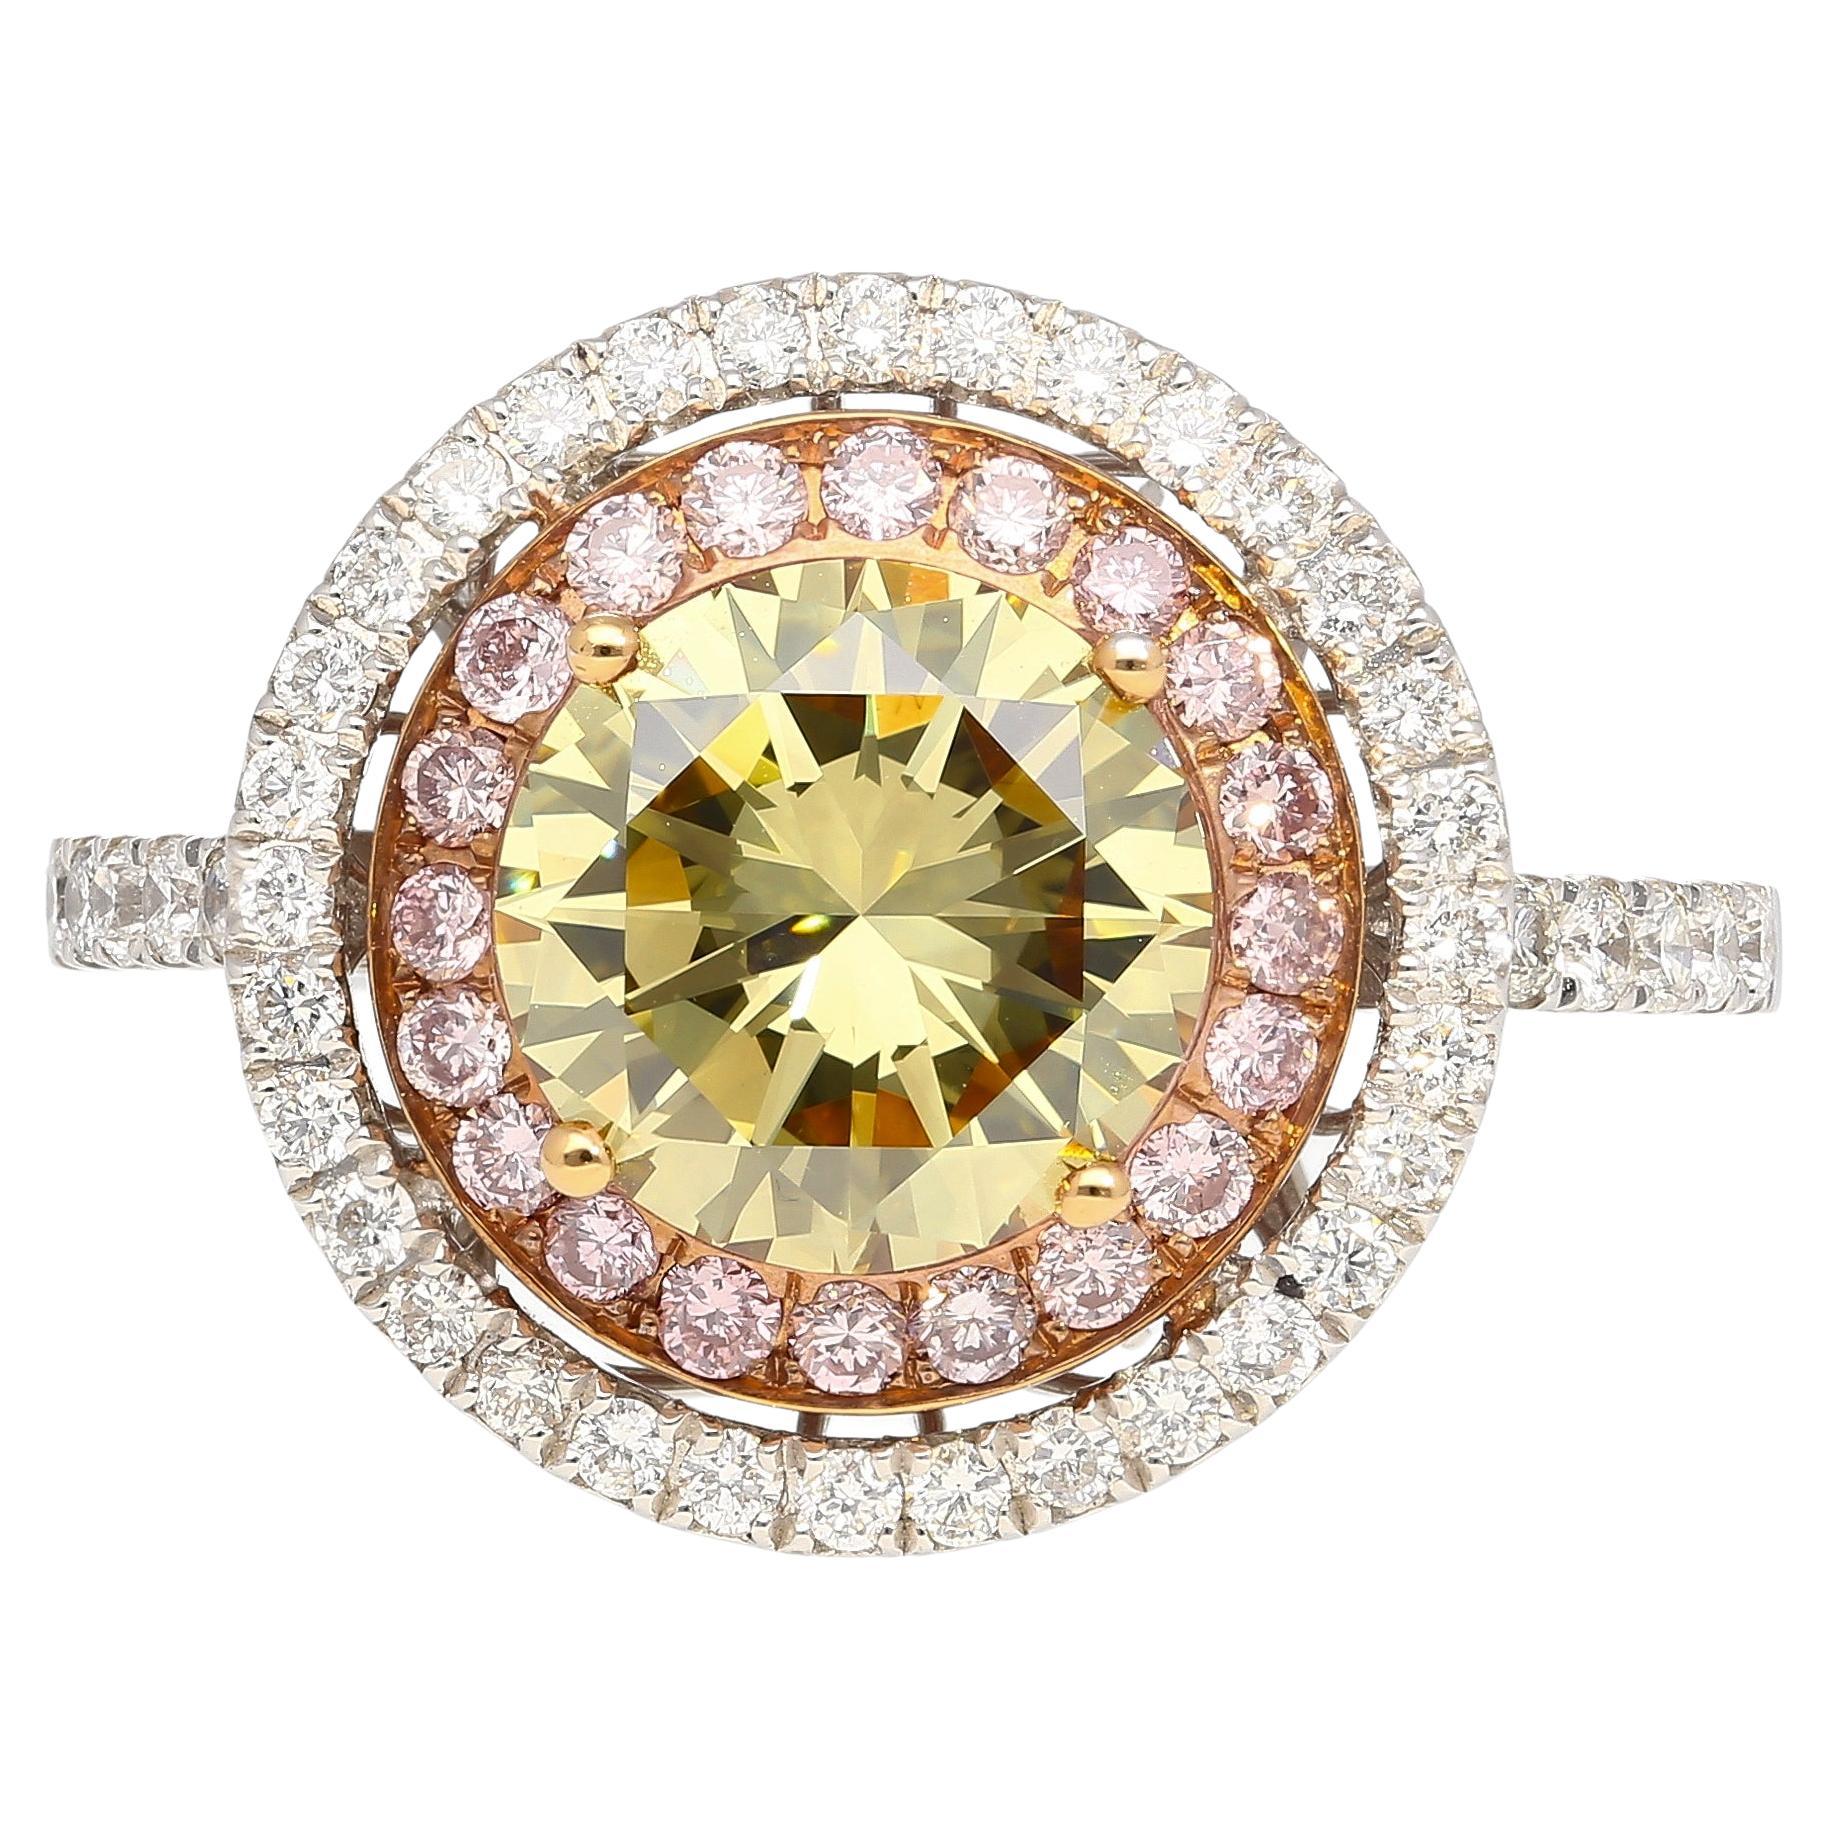 Bague double halo en diamant rond certifié GIA de 2,3 carats de couleur jaune verdâtre brunâtre